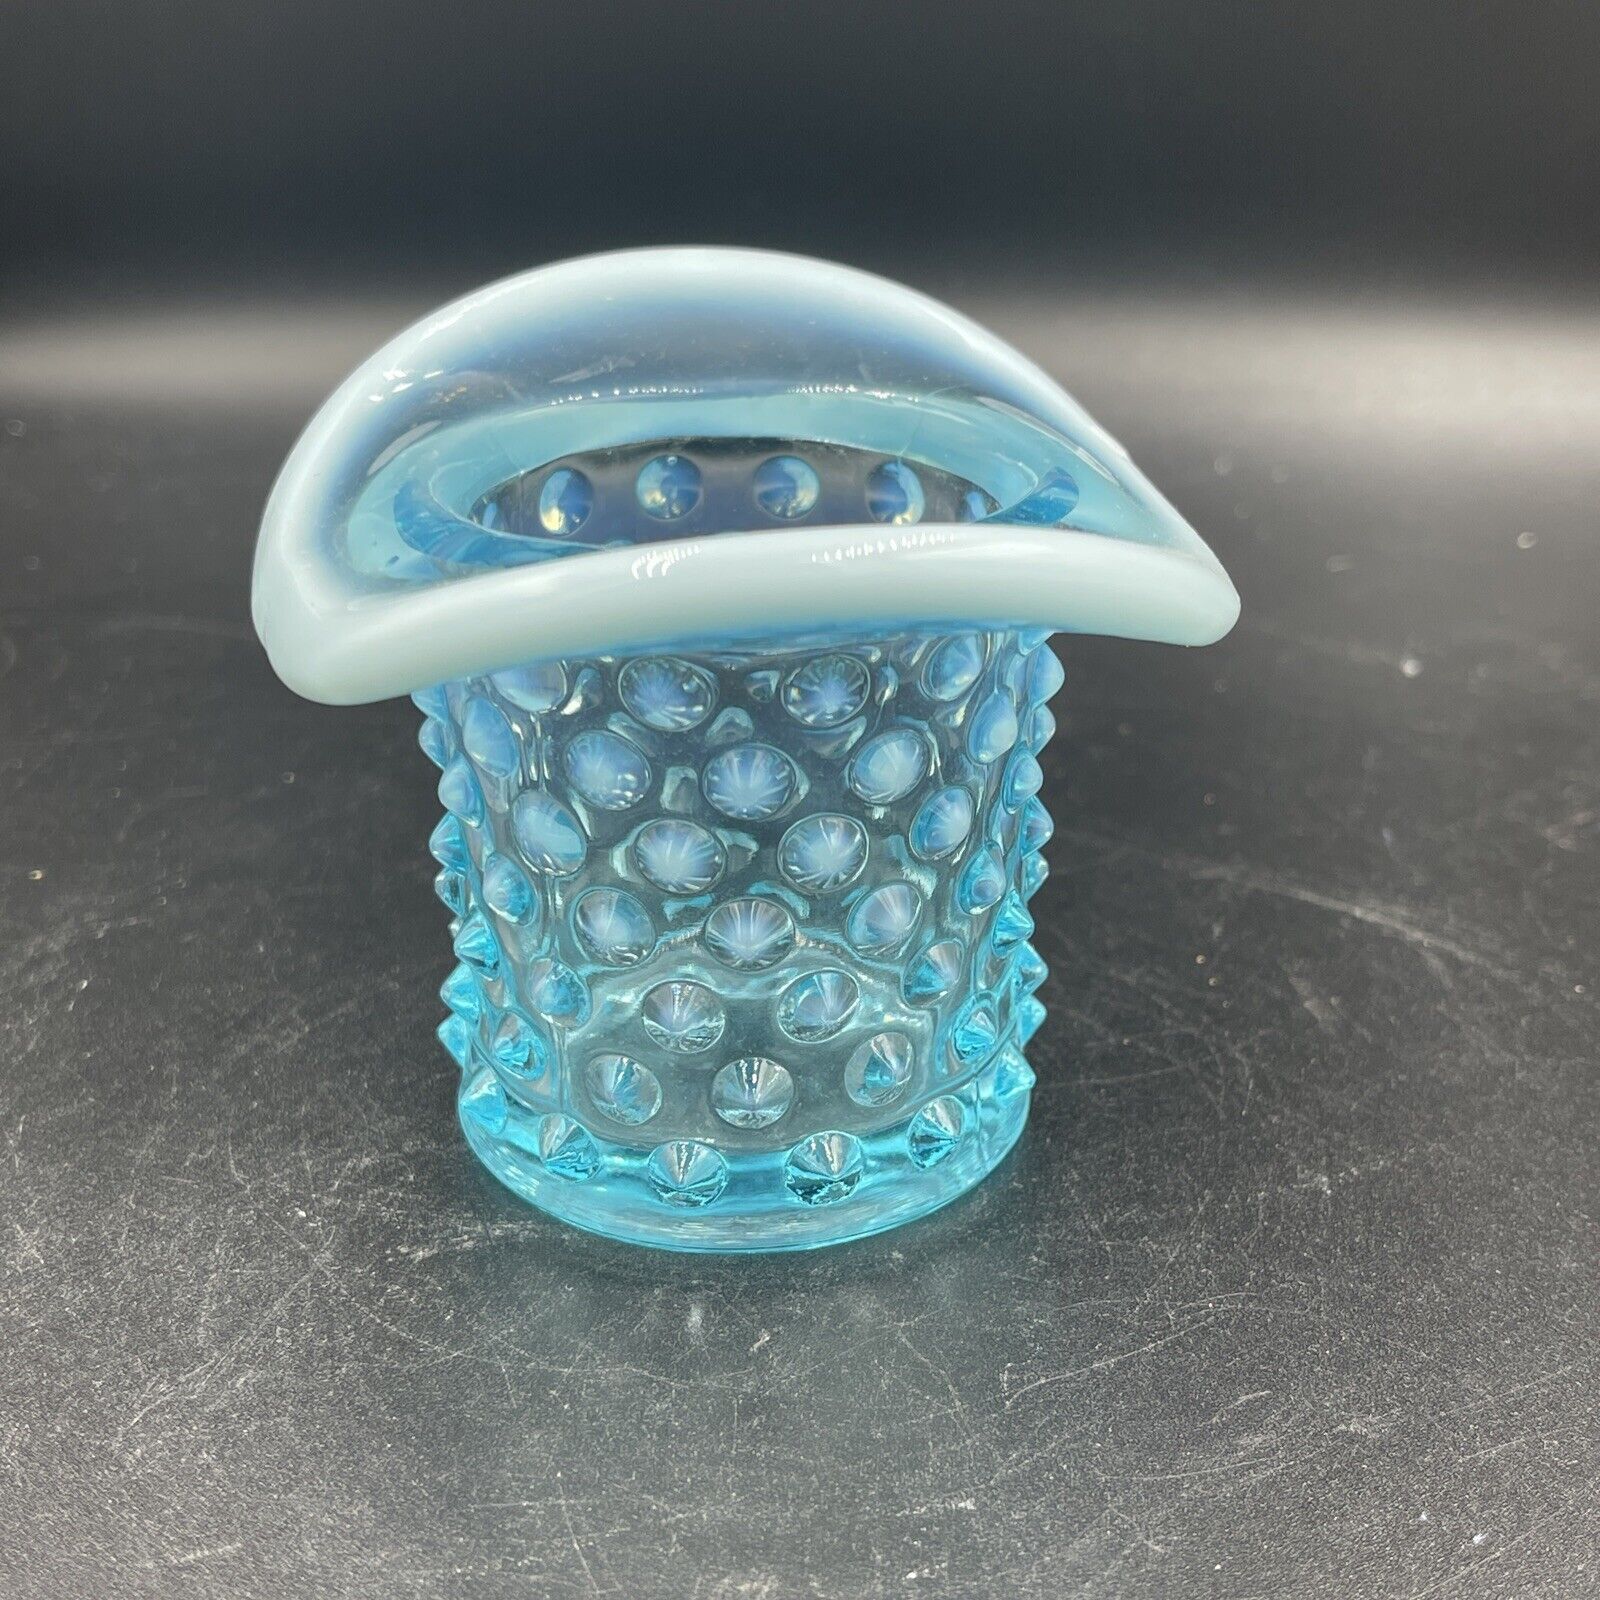 FENTON ART GLASS OPALESCENT TEAL BLUE HOBNAIL HAT TOOTHPICK HOLDER